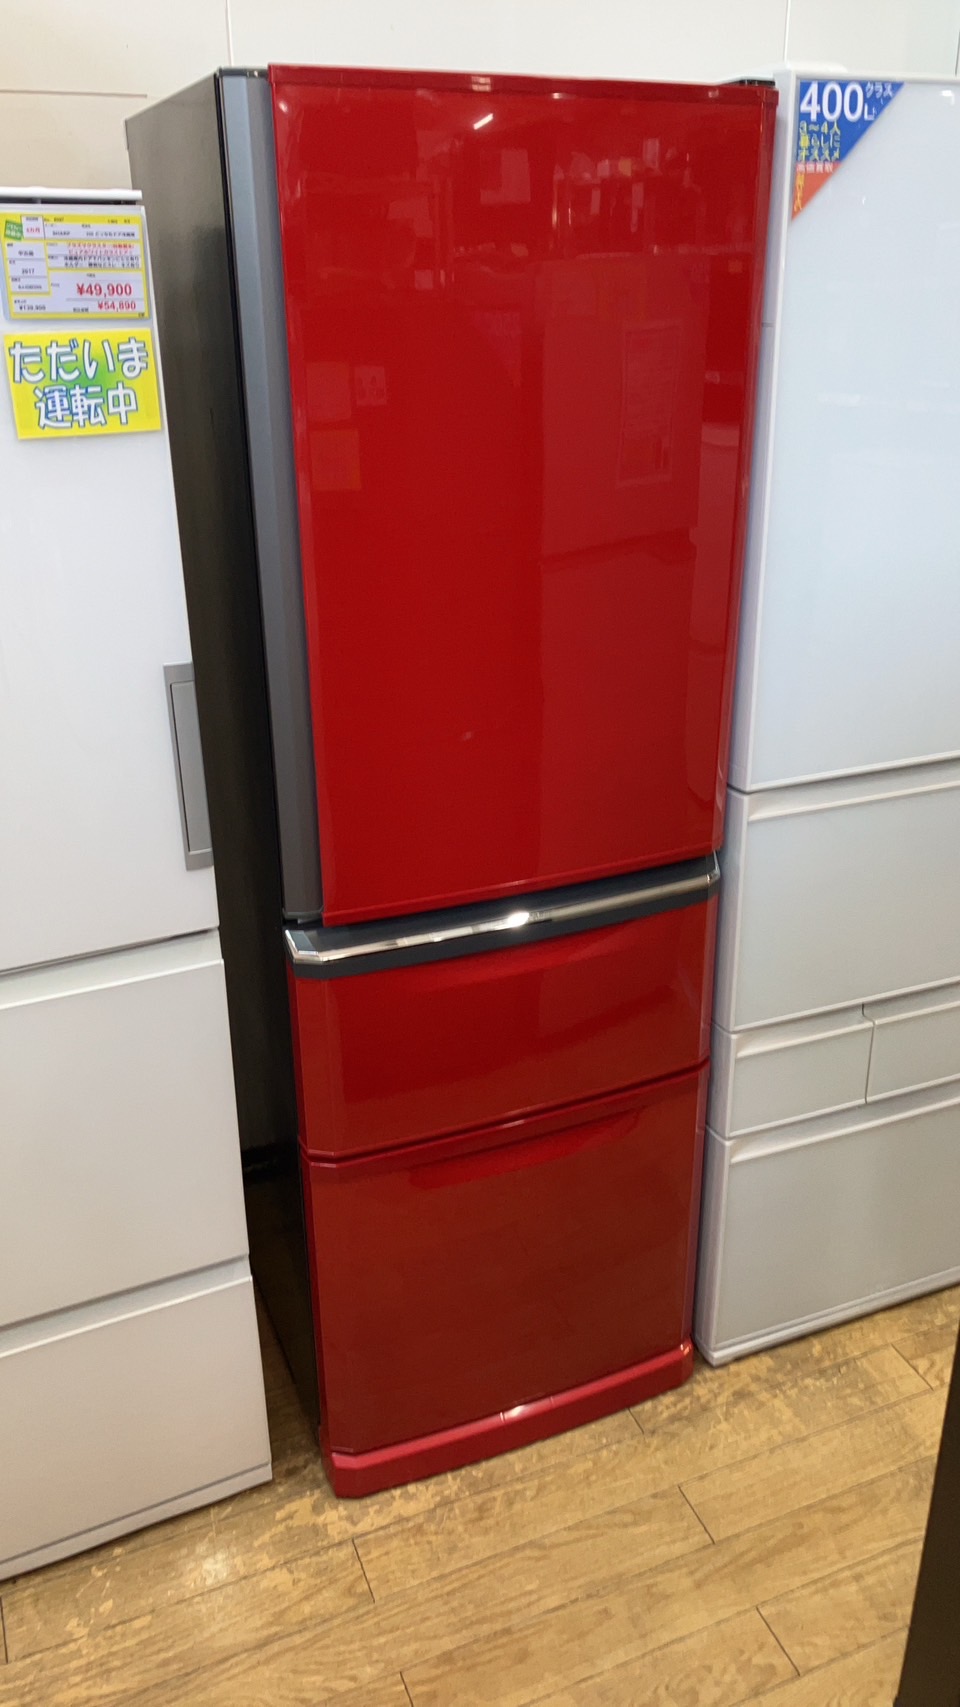 【MITSUBISHI ミツビシ 三菱 370L 冷凍庫 2015年式 MR-C37EZ-R】お買取りしました!⭐福岡市 南区 リサイクルショップ リサイクルマート大橋店⭐ - リサイクルマートは現在冷蔵庫の買取、家具の買取強化中です！お気軽にお問い合わせください。